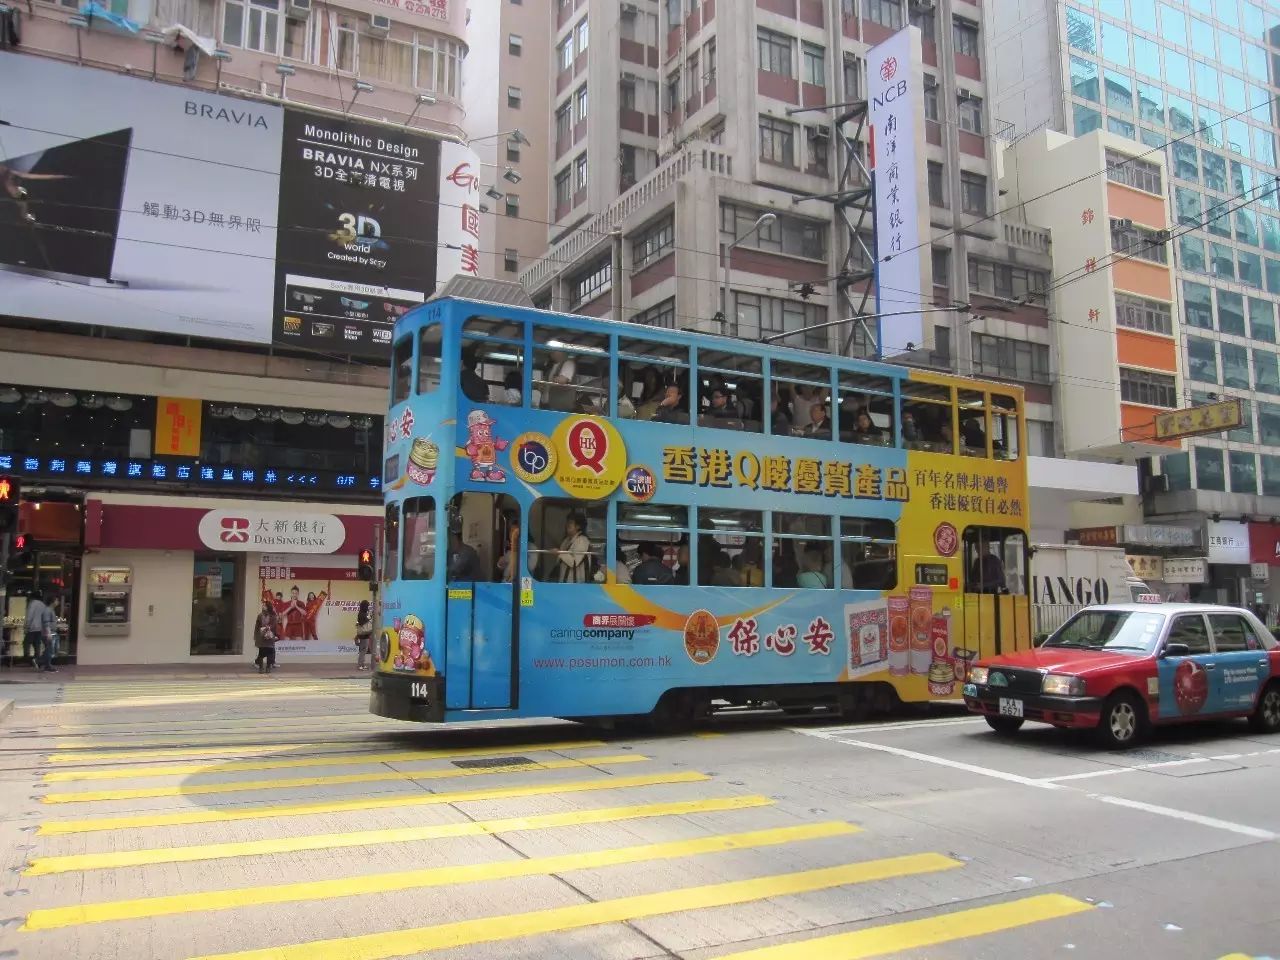 香港人多路窄,但为什么不堵车?